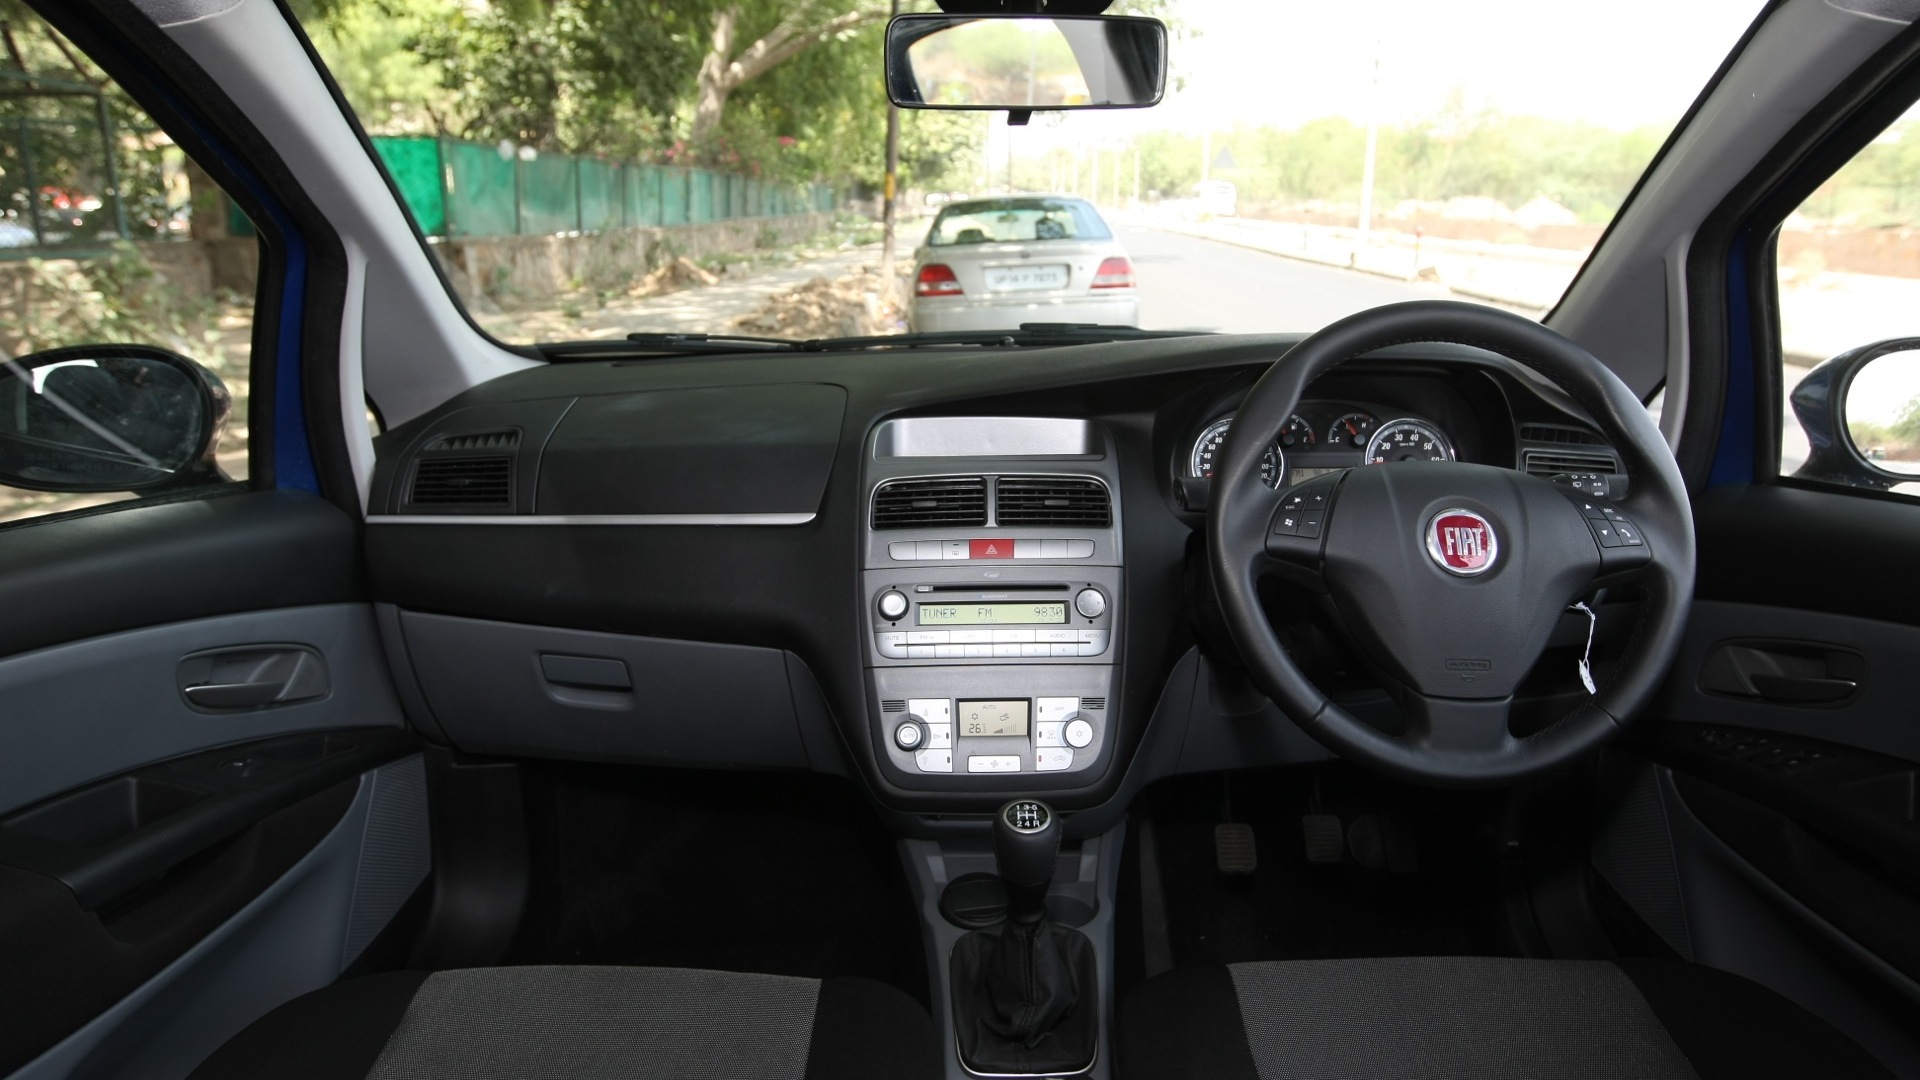 Fiat Grande Punto 12 Fire Emotion Interior Car Photos Overdrive